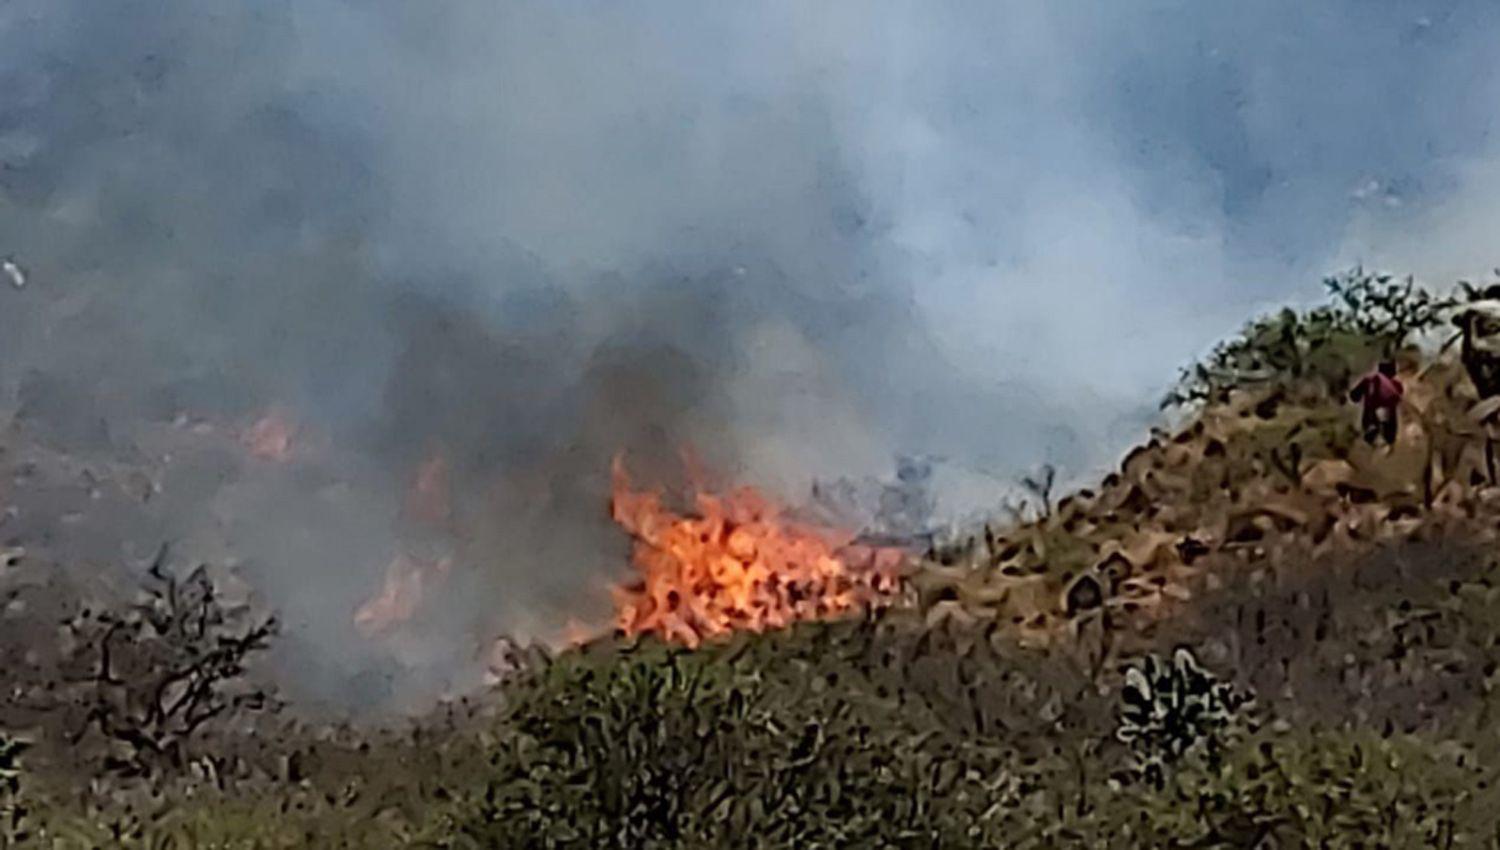 Dantildeos materiales en campos alambrados y muerte de ganado dejoacute un incendio forestal sobre la ruta 13